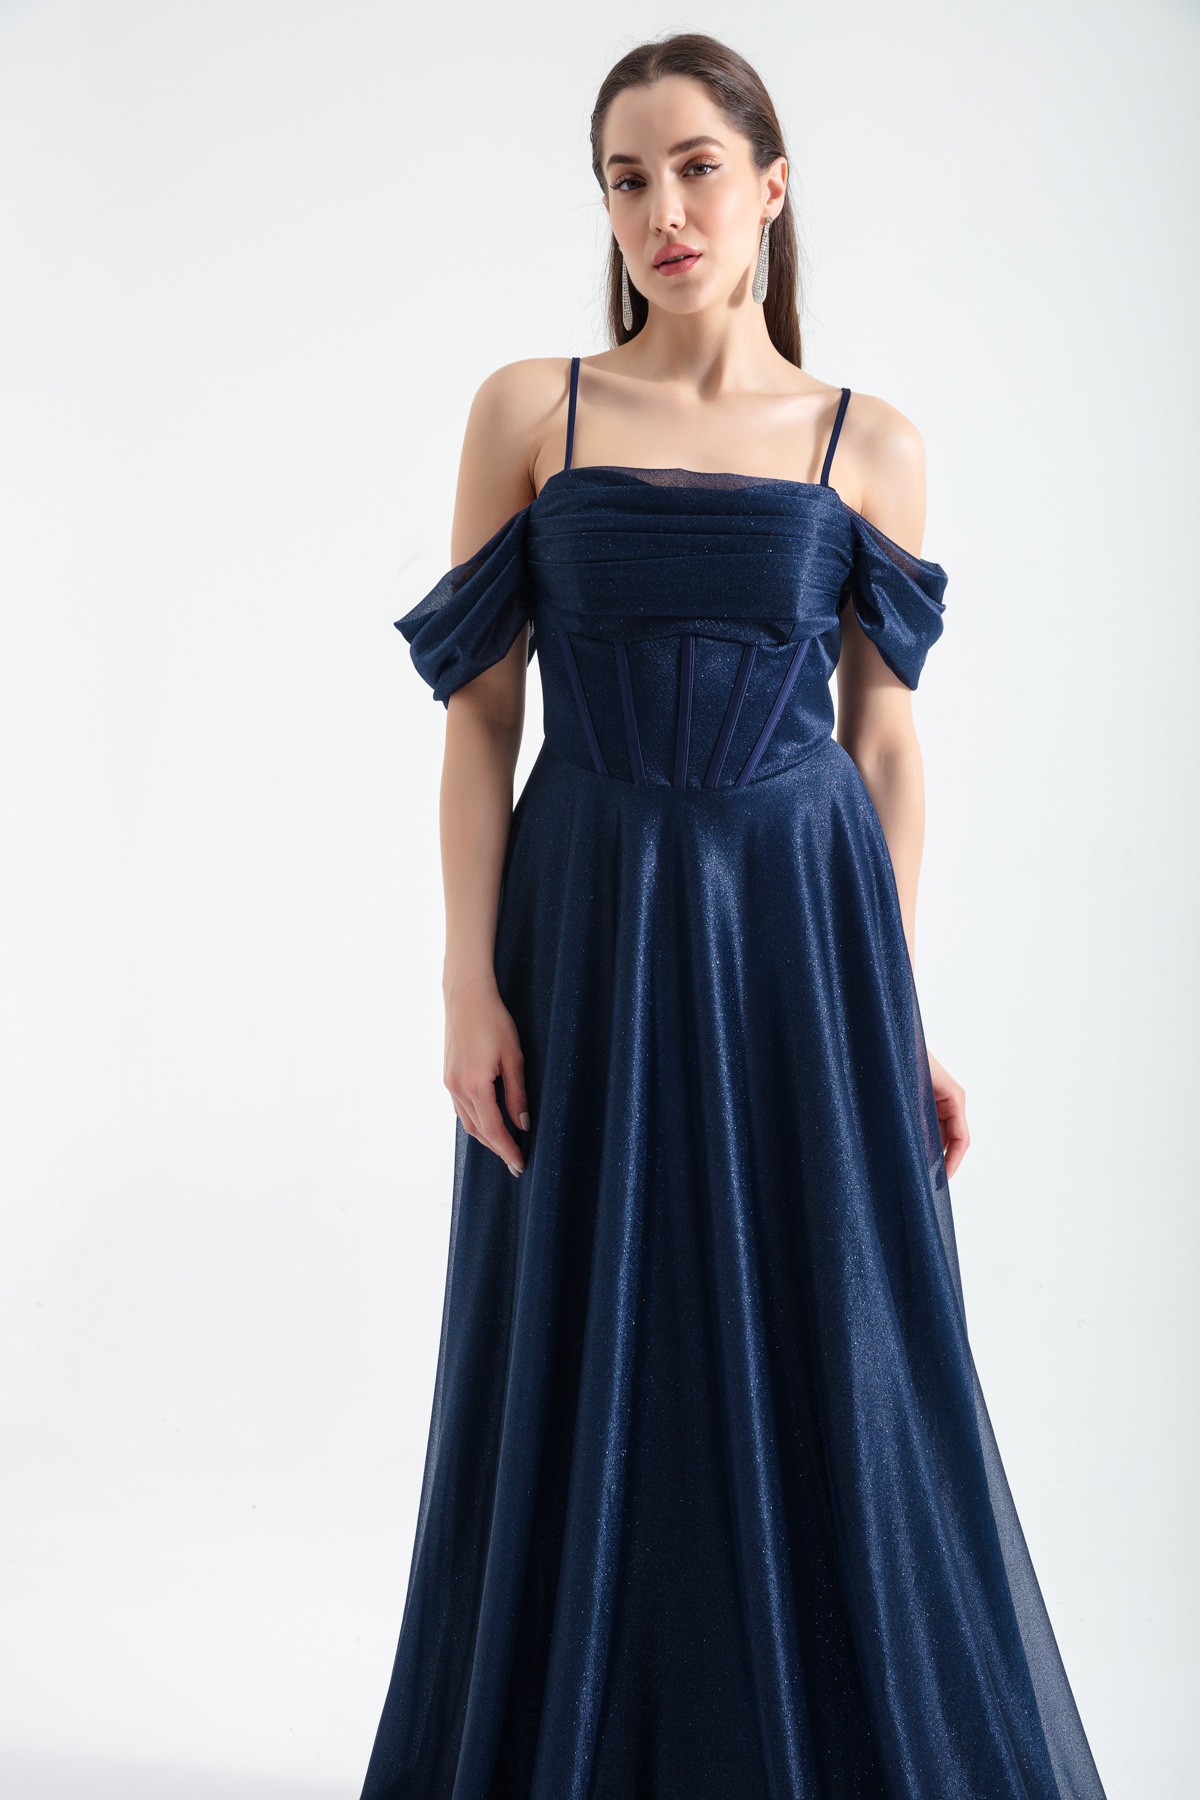 Kadın Askılı Simli Uzun Kloş Abiye Elbise - Lacivert